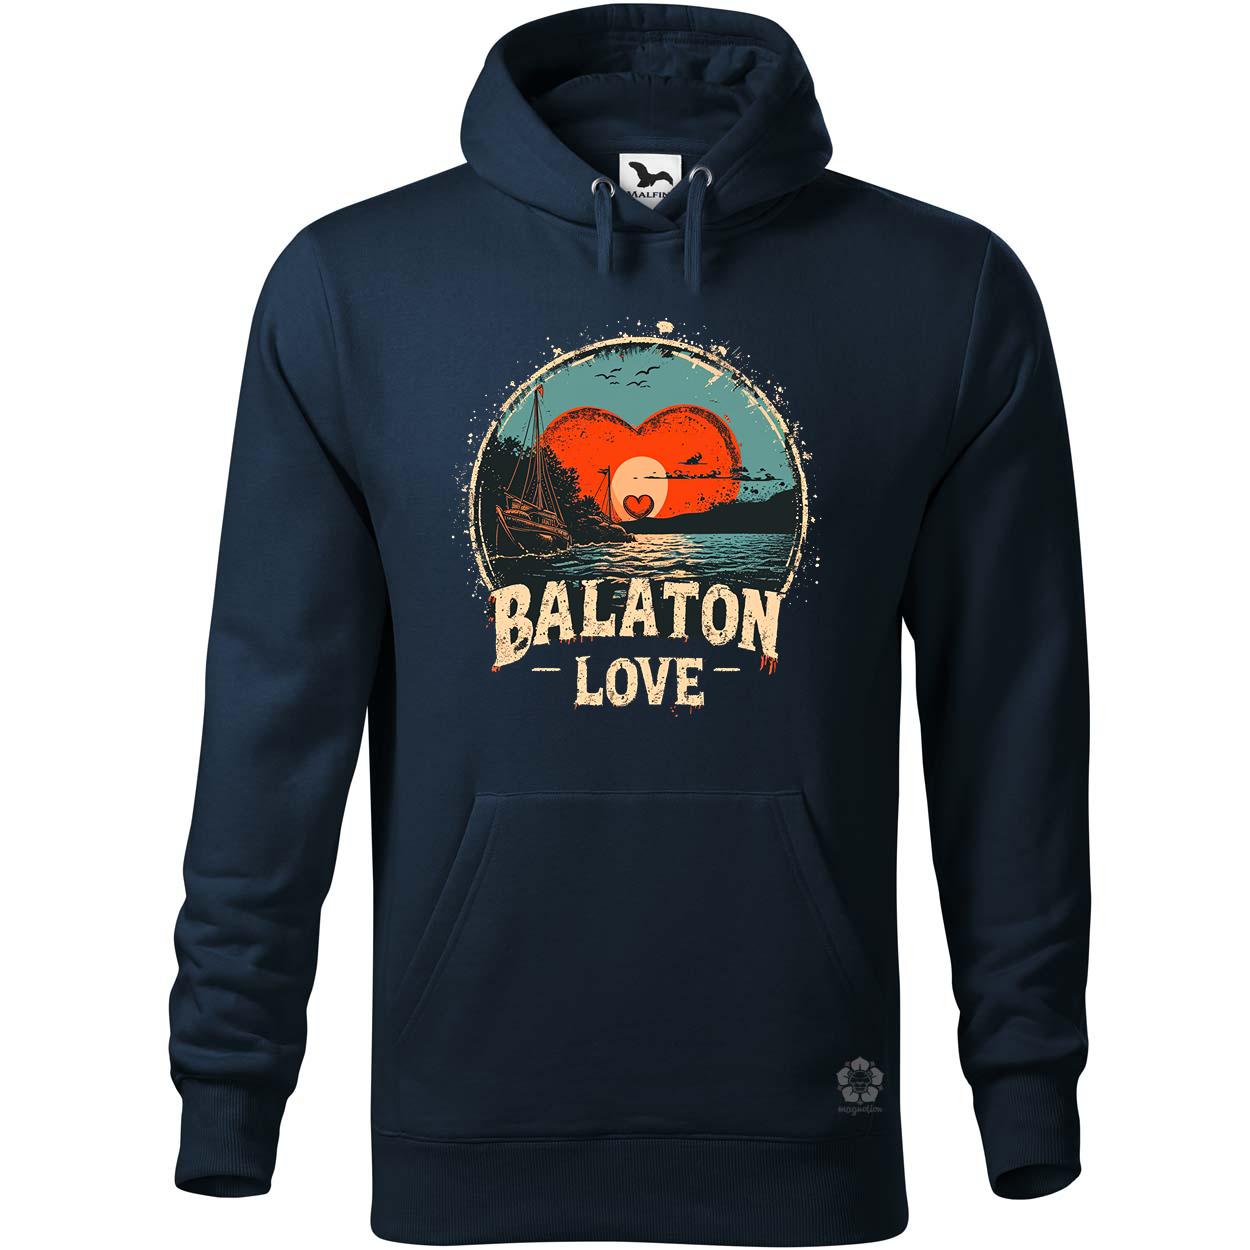 Balaton LOVE v2